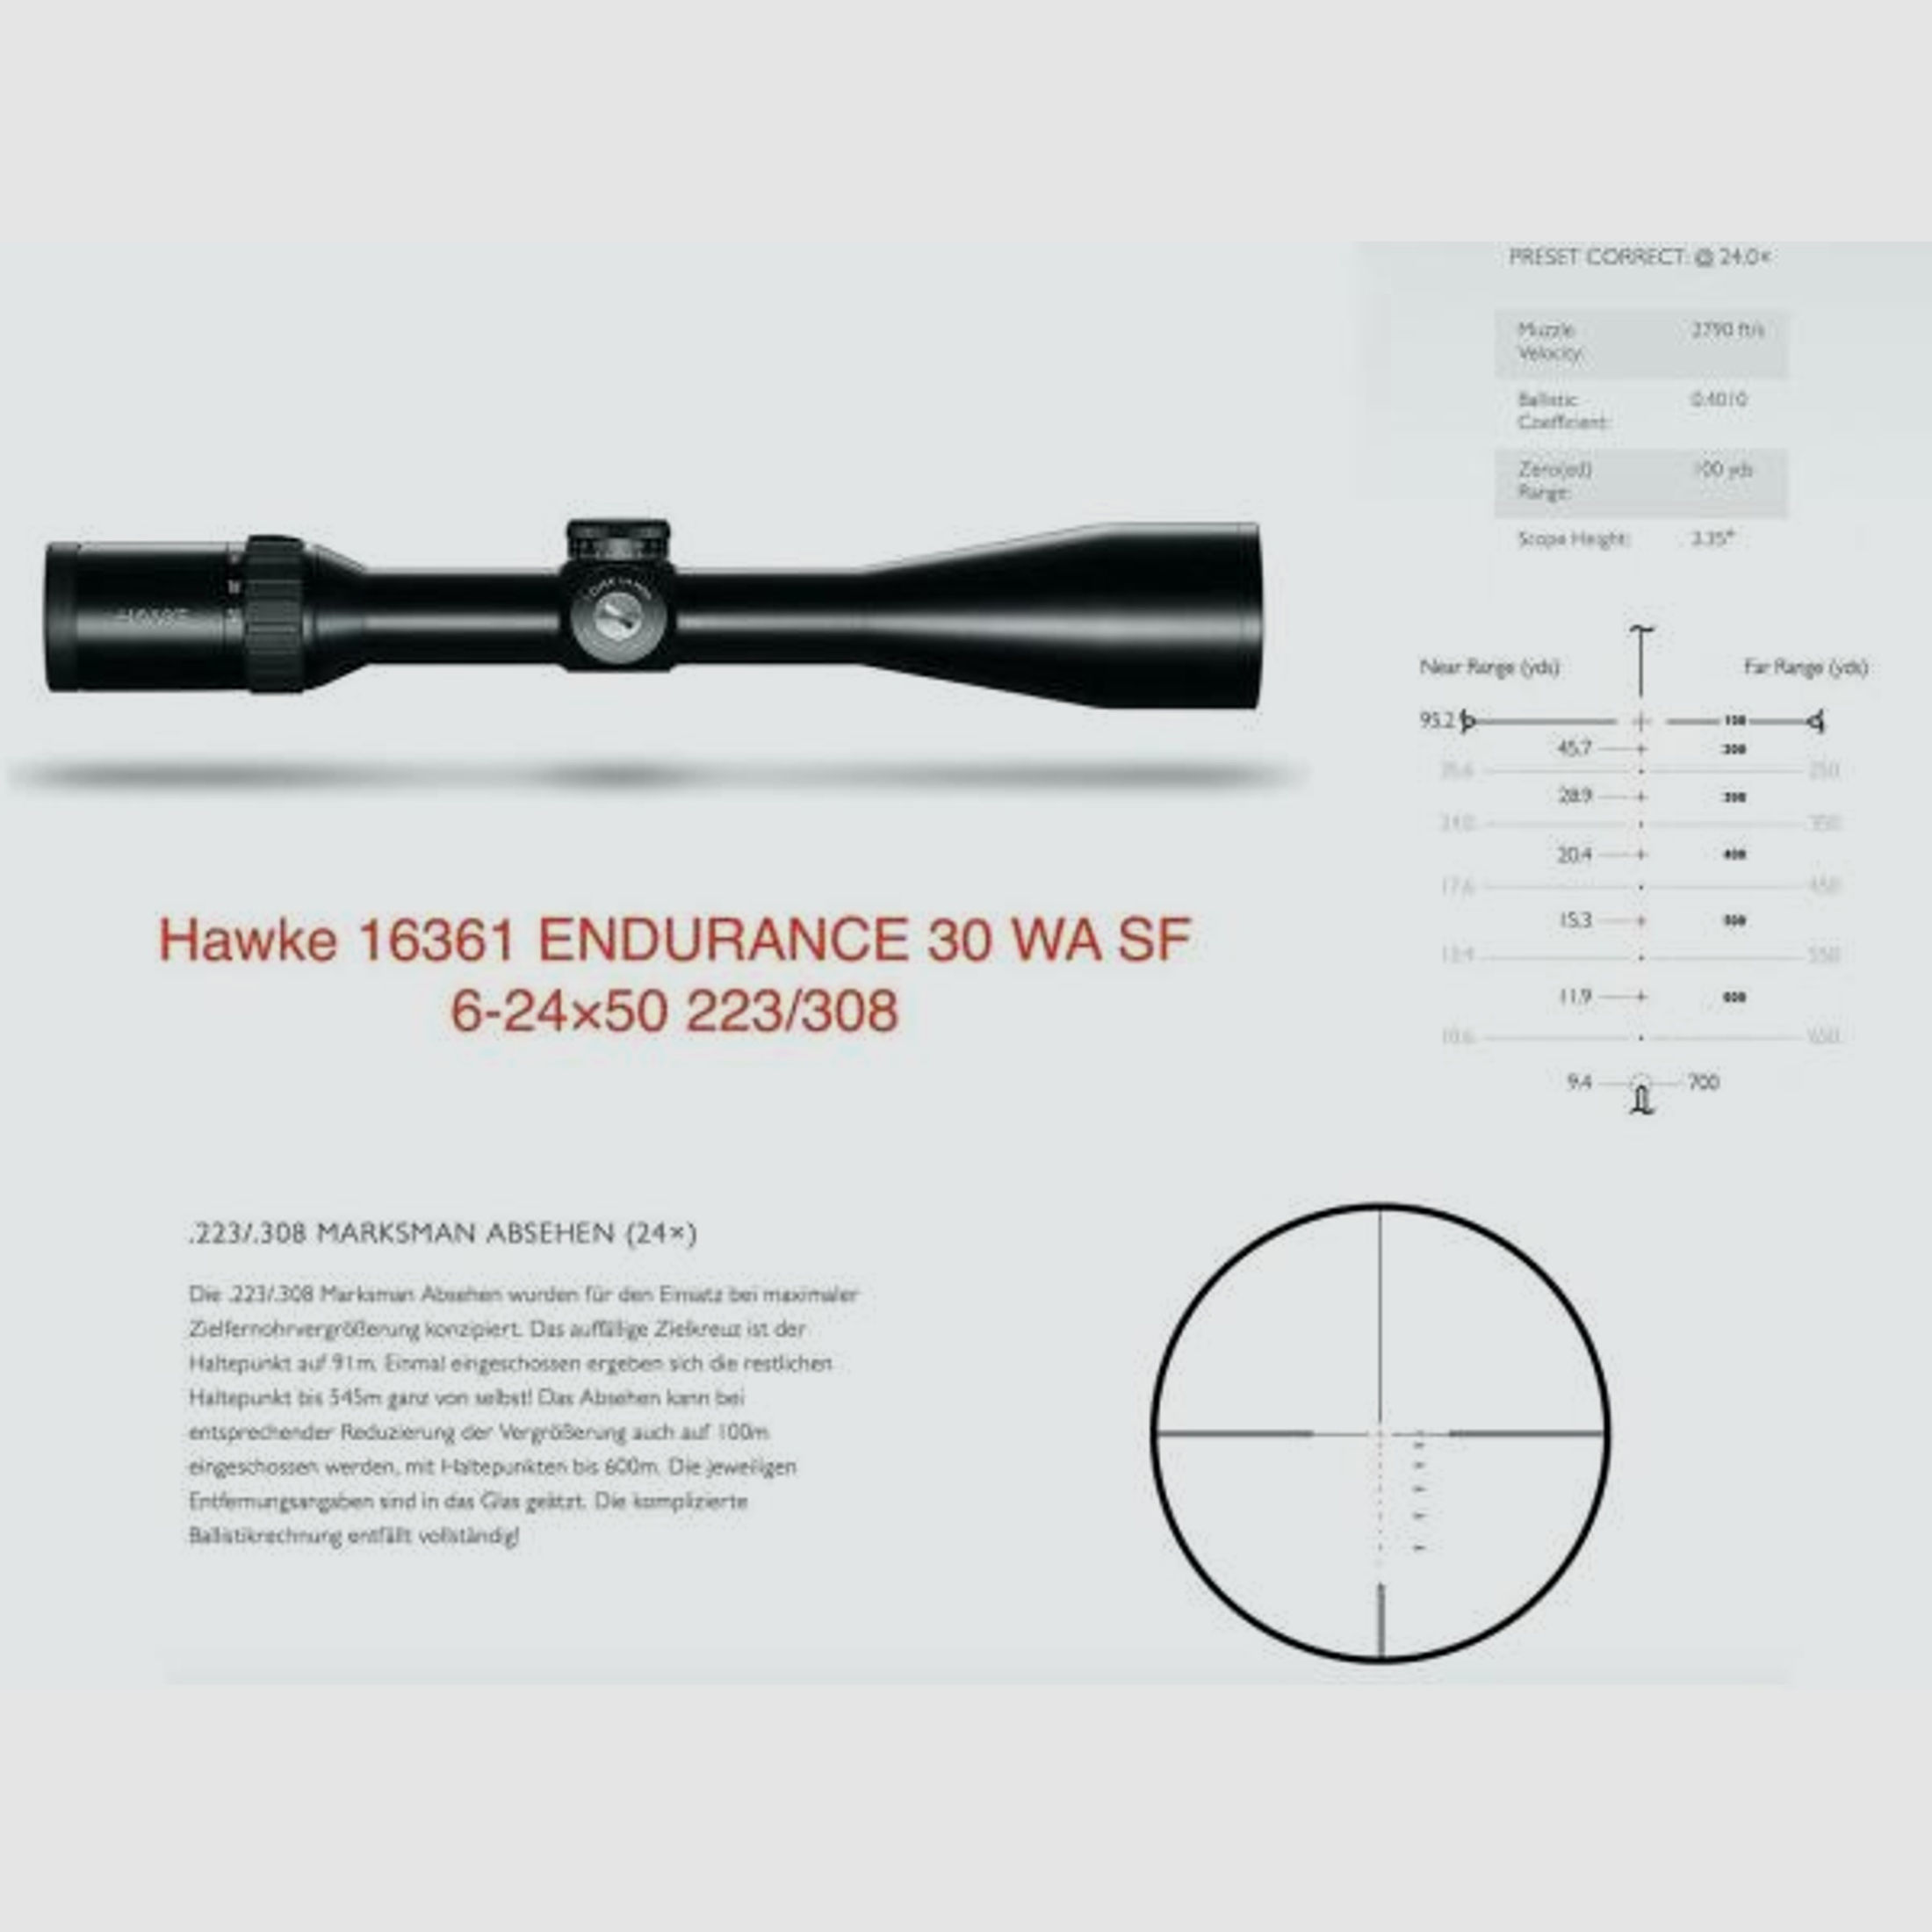 HAWKE Optics Zielfernrohr mit Leuchtabsehen 6-24x50SF Endurance (30mm) Abs. 223